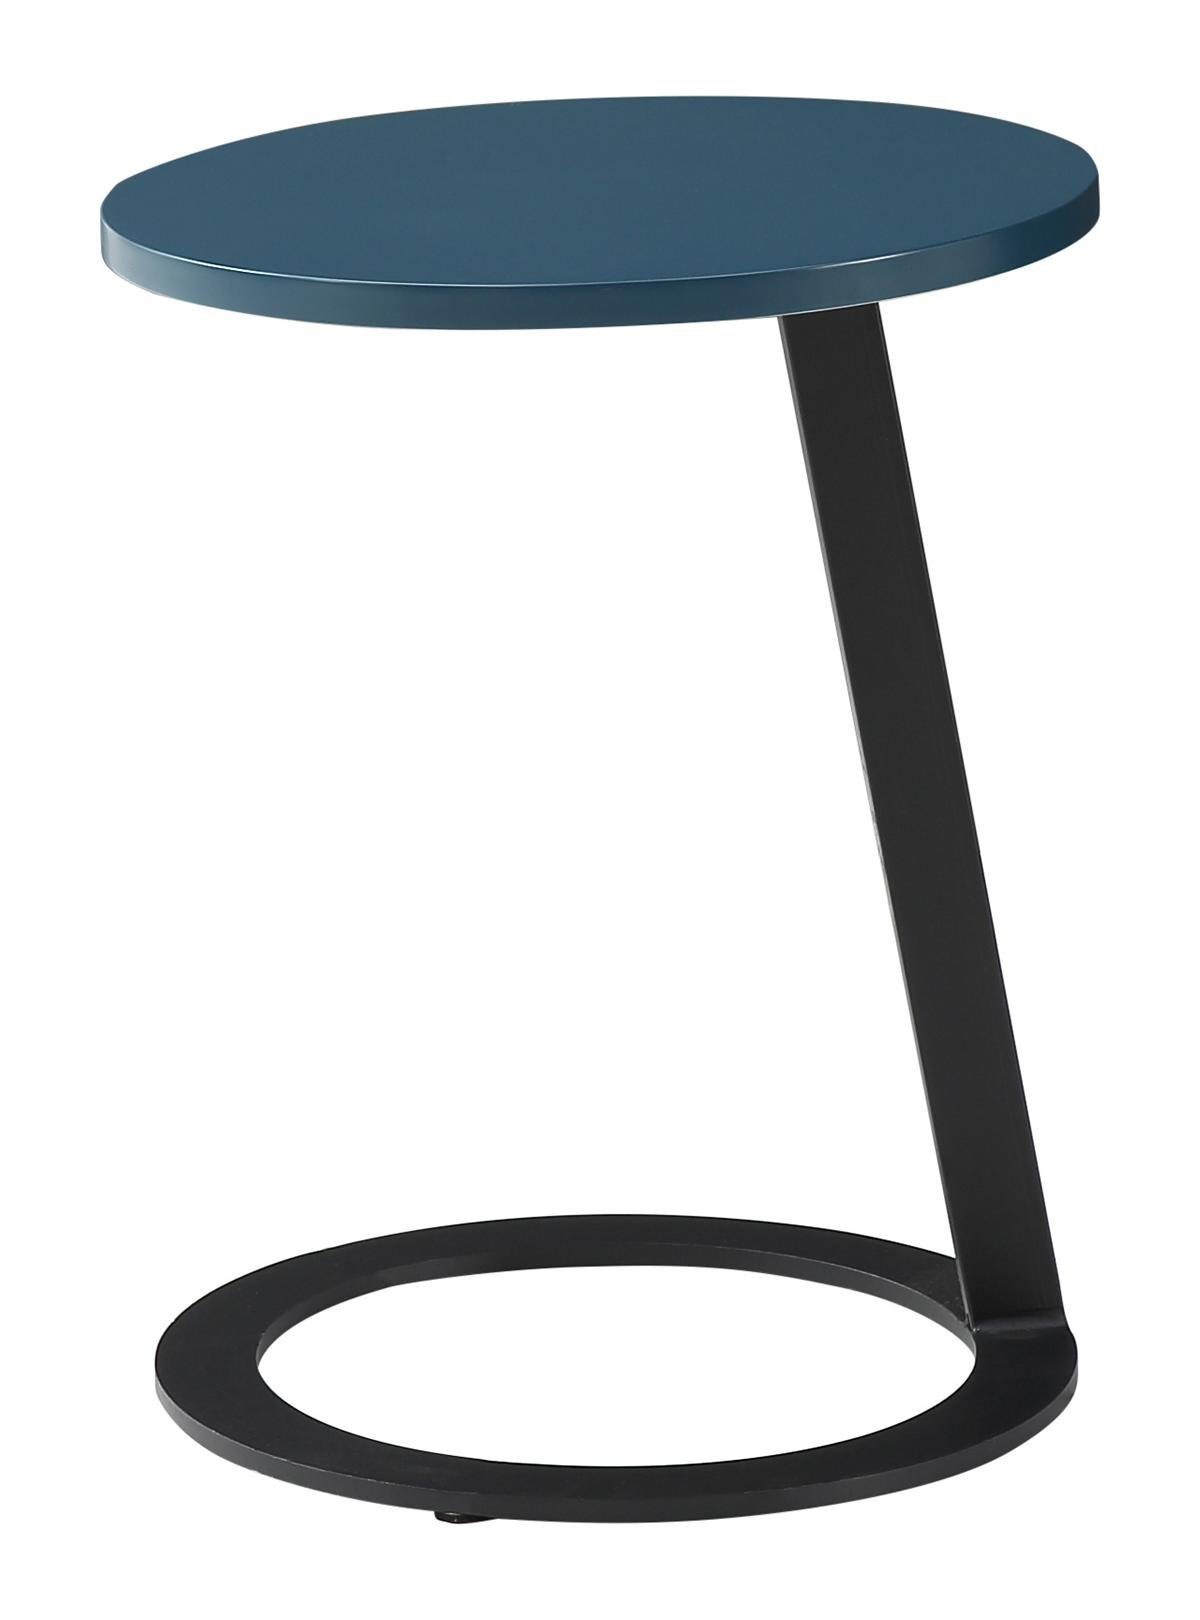 Jafra Couchtisch, Beistelltisch Tisch Couchtisch Sofa Tisch Wohnzimmer Design Tische Rund Runde